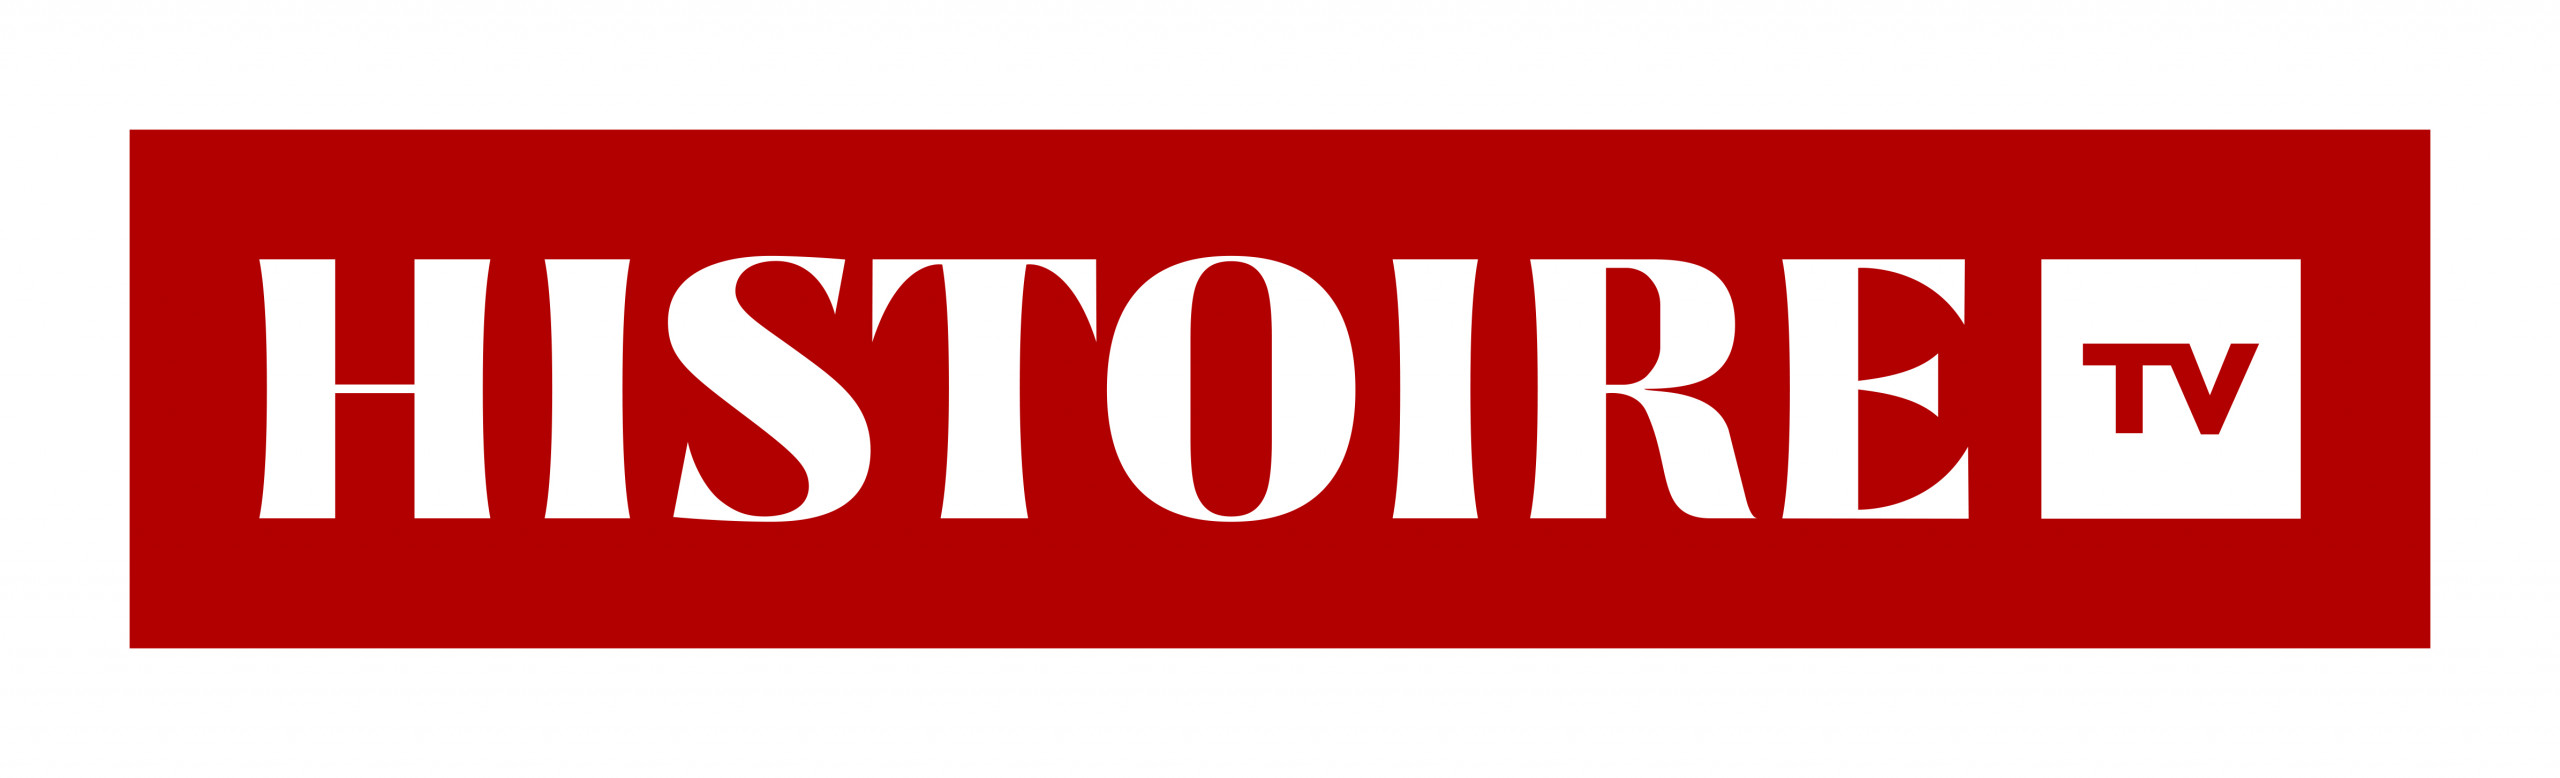 Logo histoire TV